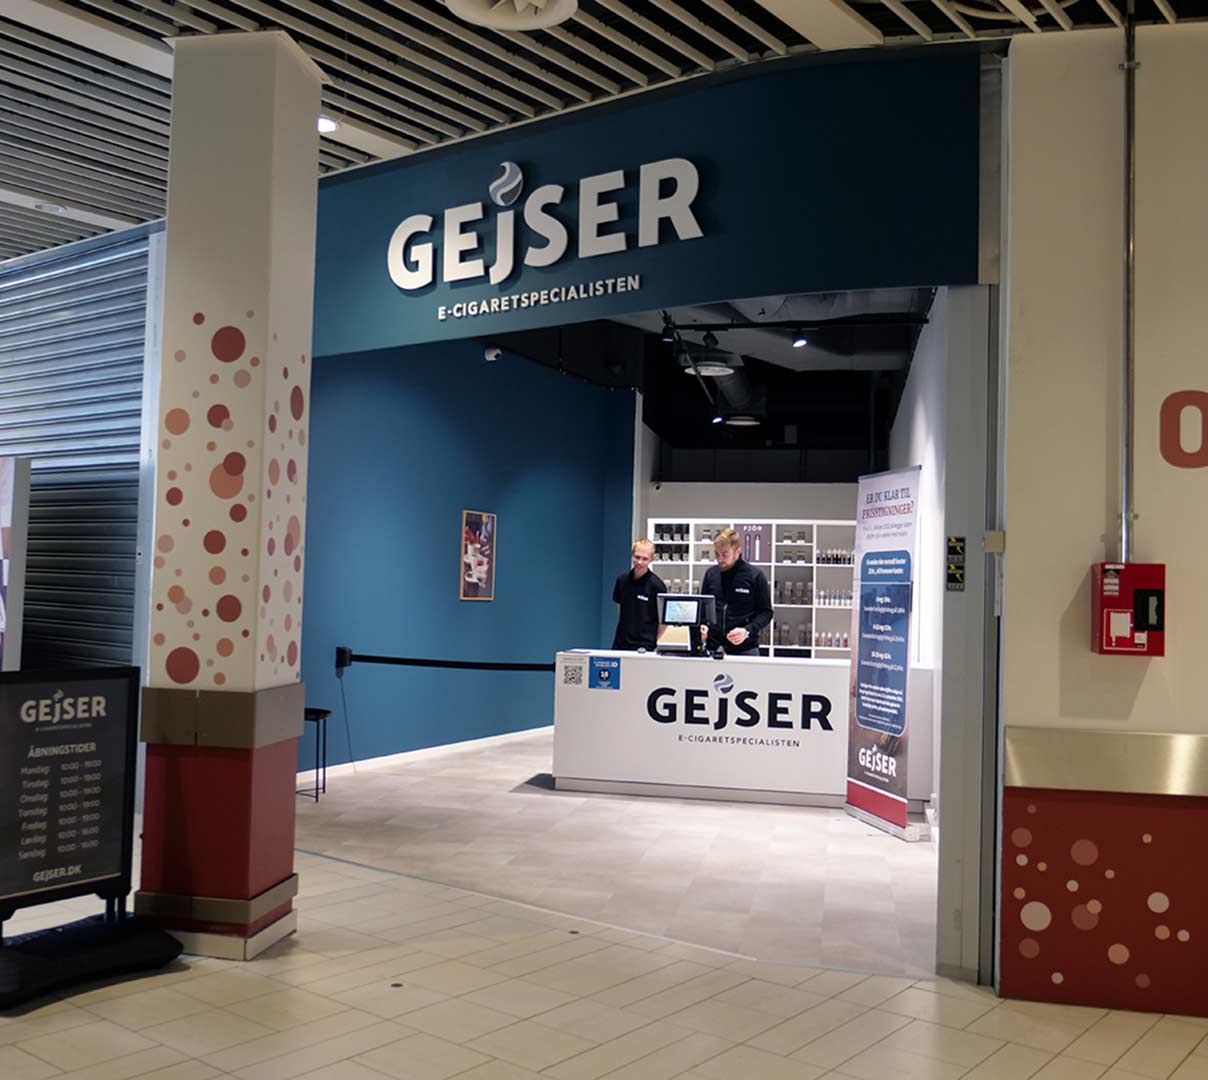 GEjSER er åbnet i Glostrup Shoppingcenter